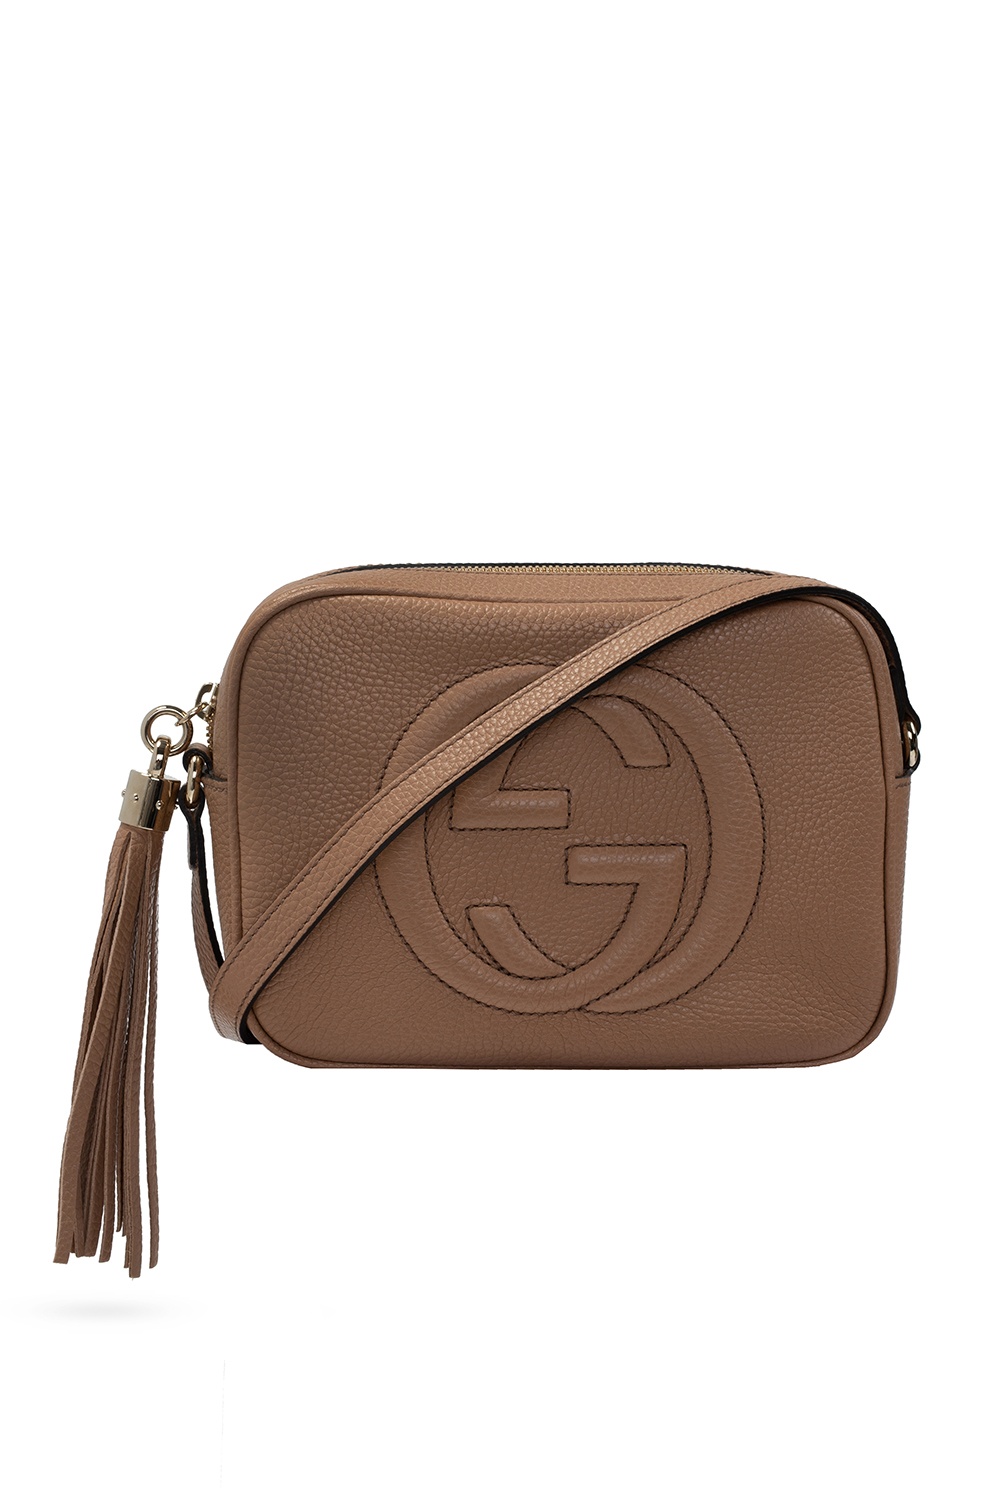 Gucci 'Soho Disco' crossbody bag, Women's Bags